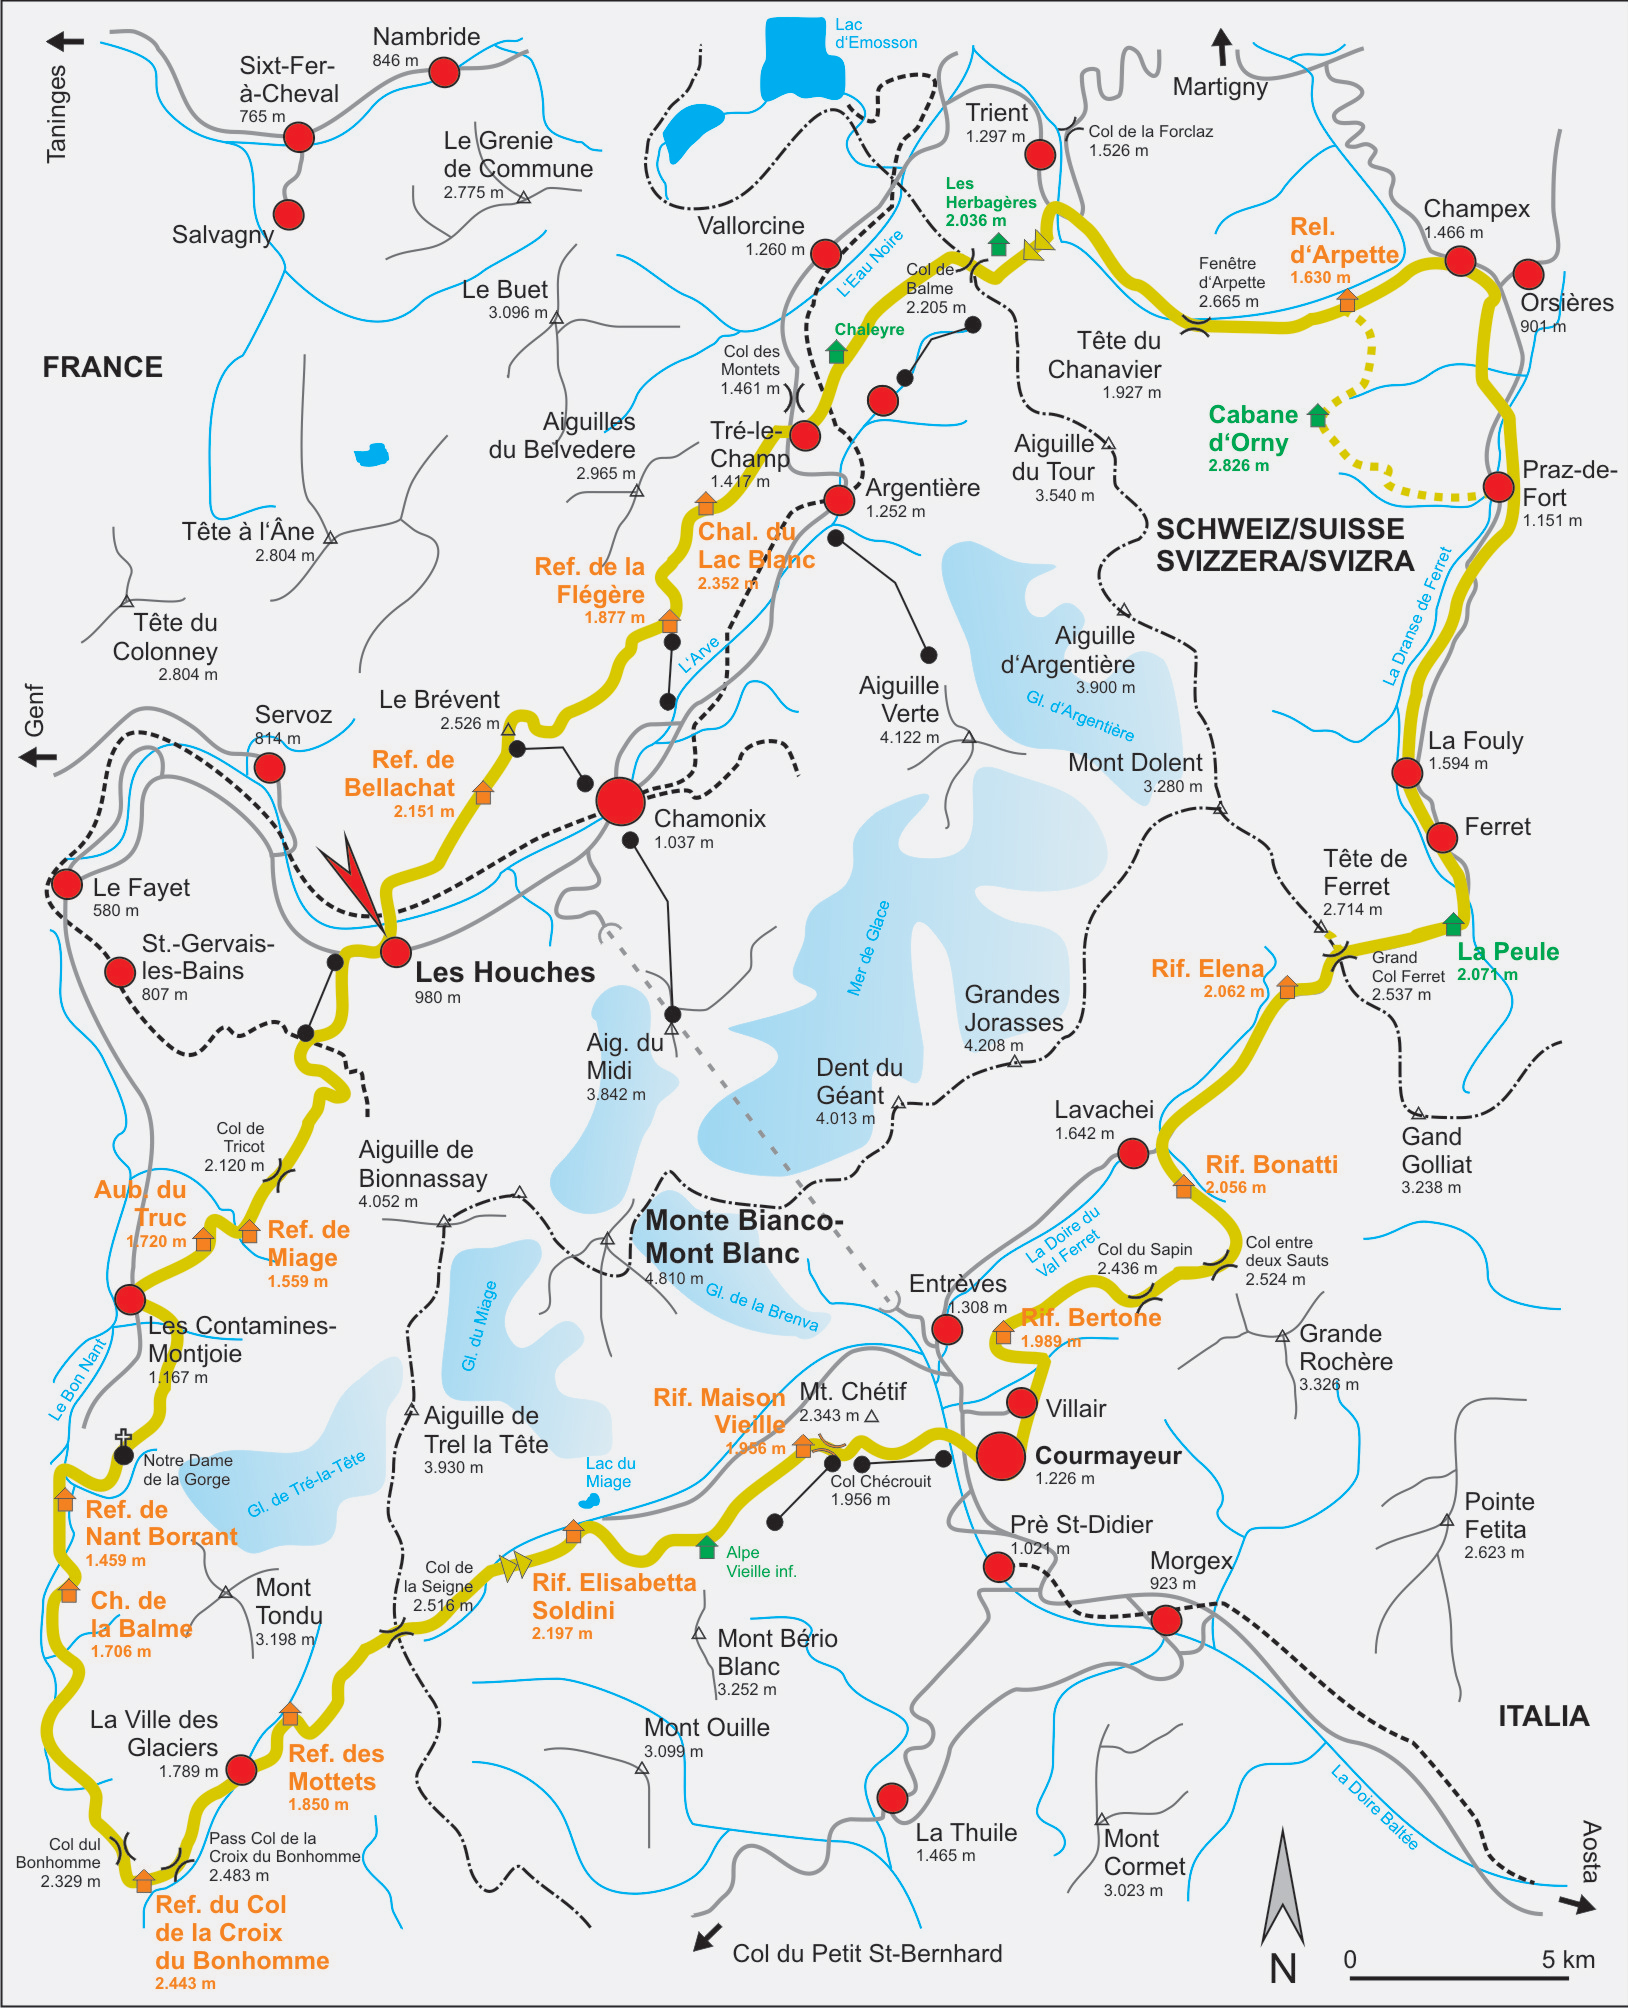 Tour du Mont Blanc (4-Days)